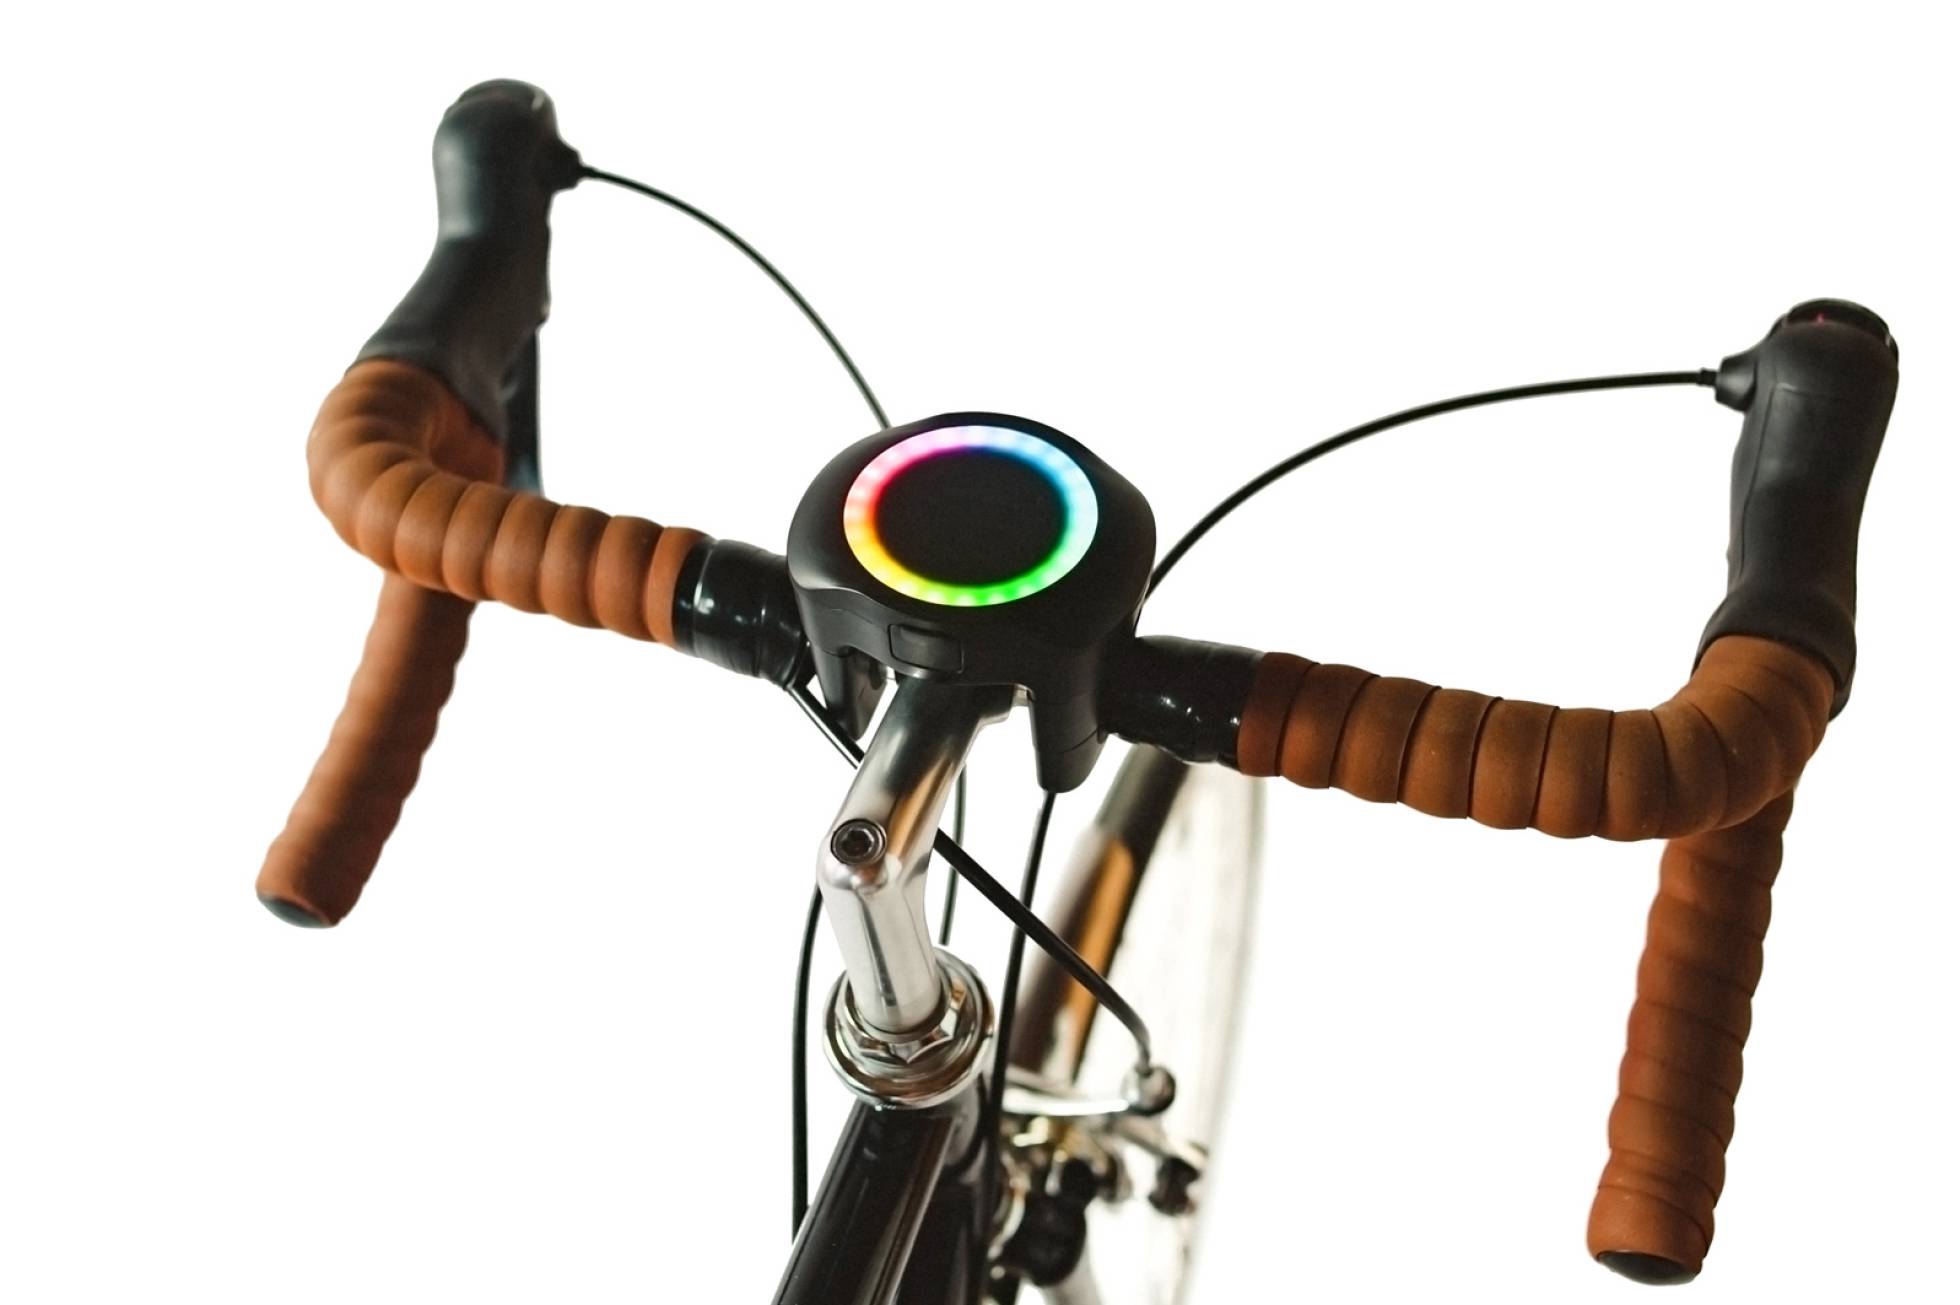 The SmartHalo mounted on a bike. Source: SmartHalo Technologies